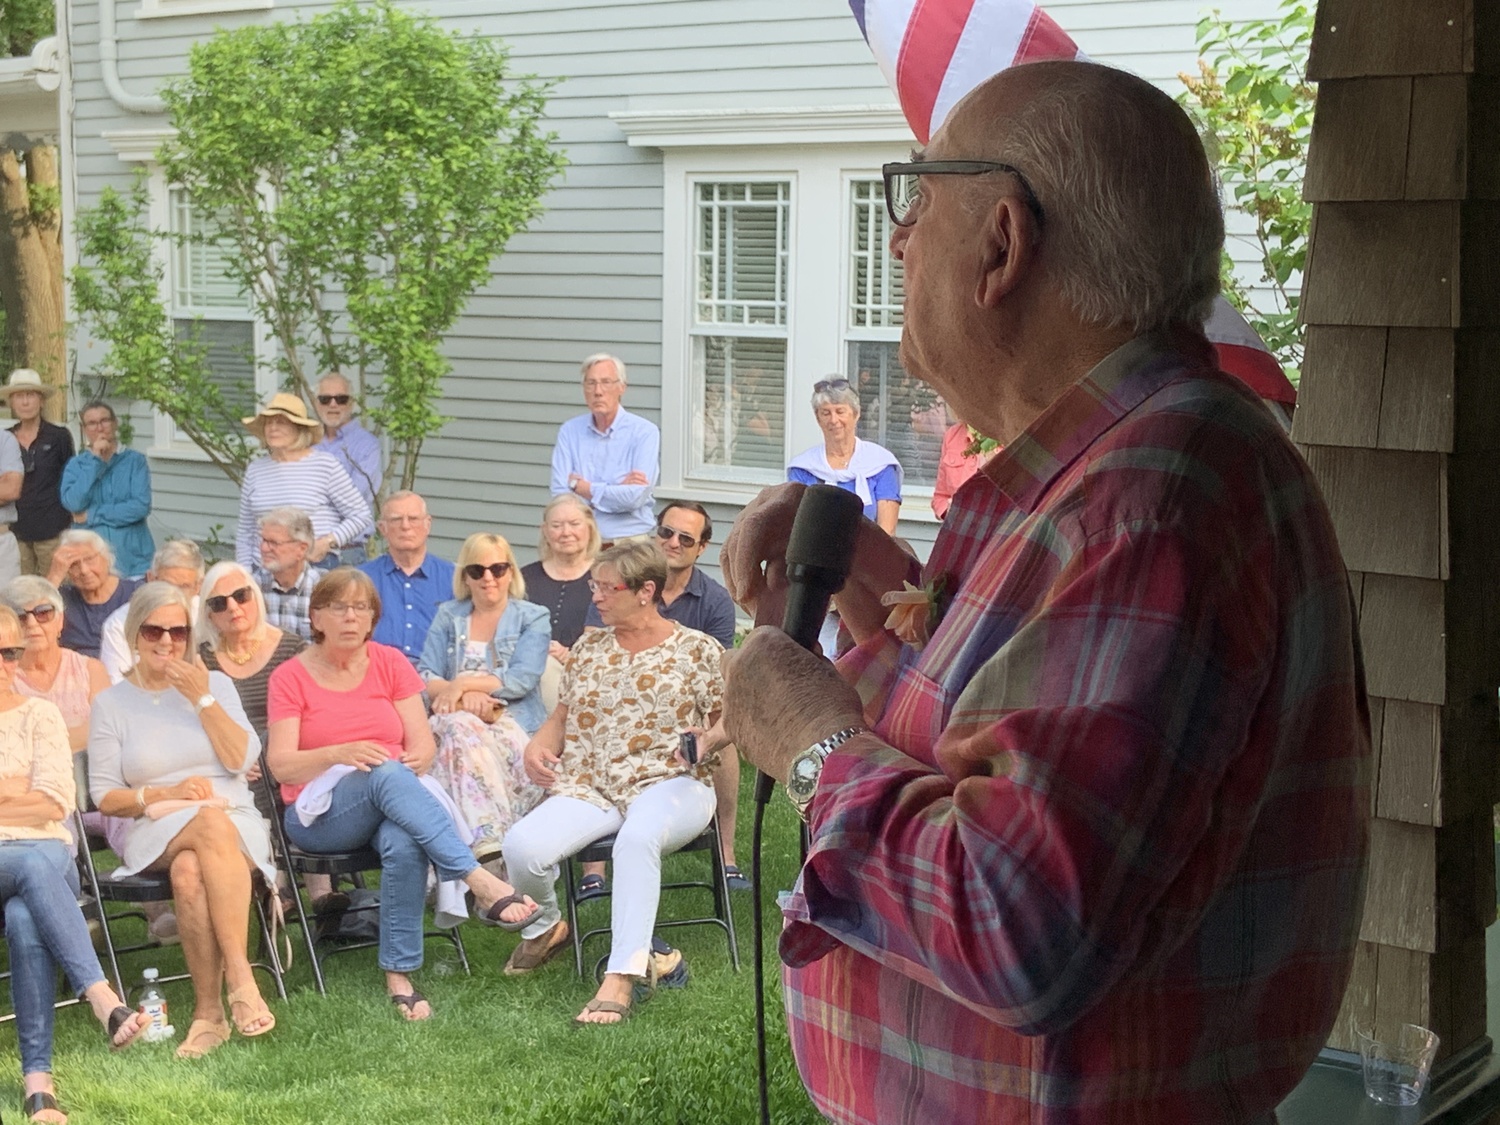 Sag Harbor restaurateur Jack Tagliasacchi spoke to a large crowd at the Sag Harbor Historical Museum on Sunday. STEPHEN J. KOTZ